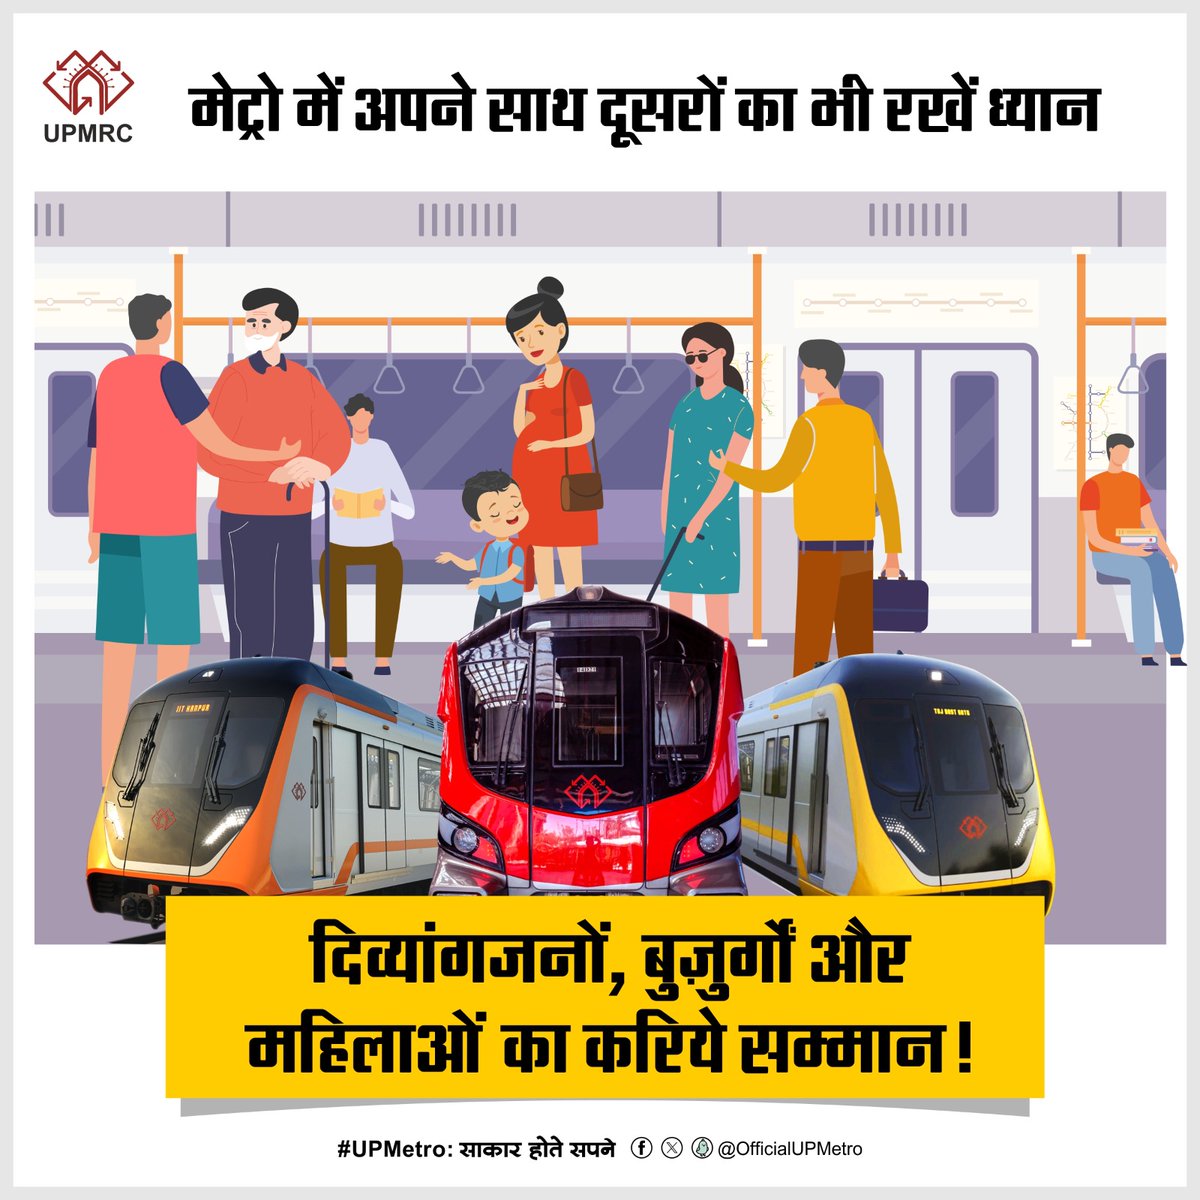 मेट्रो में अपने साथ दुसरो का भी रखे ध्यान, दिव्यांगजनों, बुज़ुर्गों और महिलाओं का करिये सम्मान! #UPMetro:साकारहोतेसपने #LucknowMetro #KanpurMetro #AgraMetro